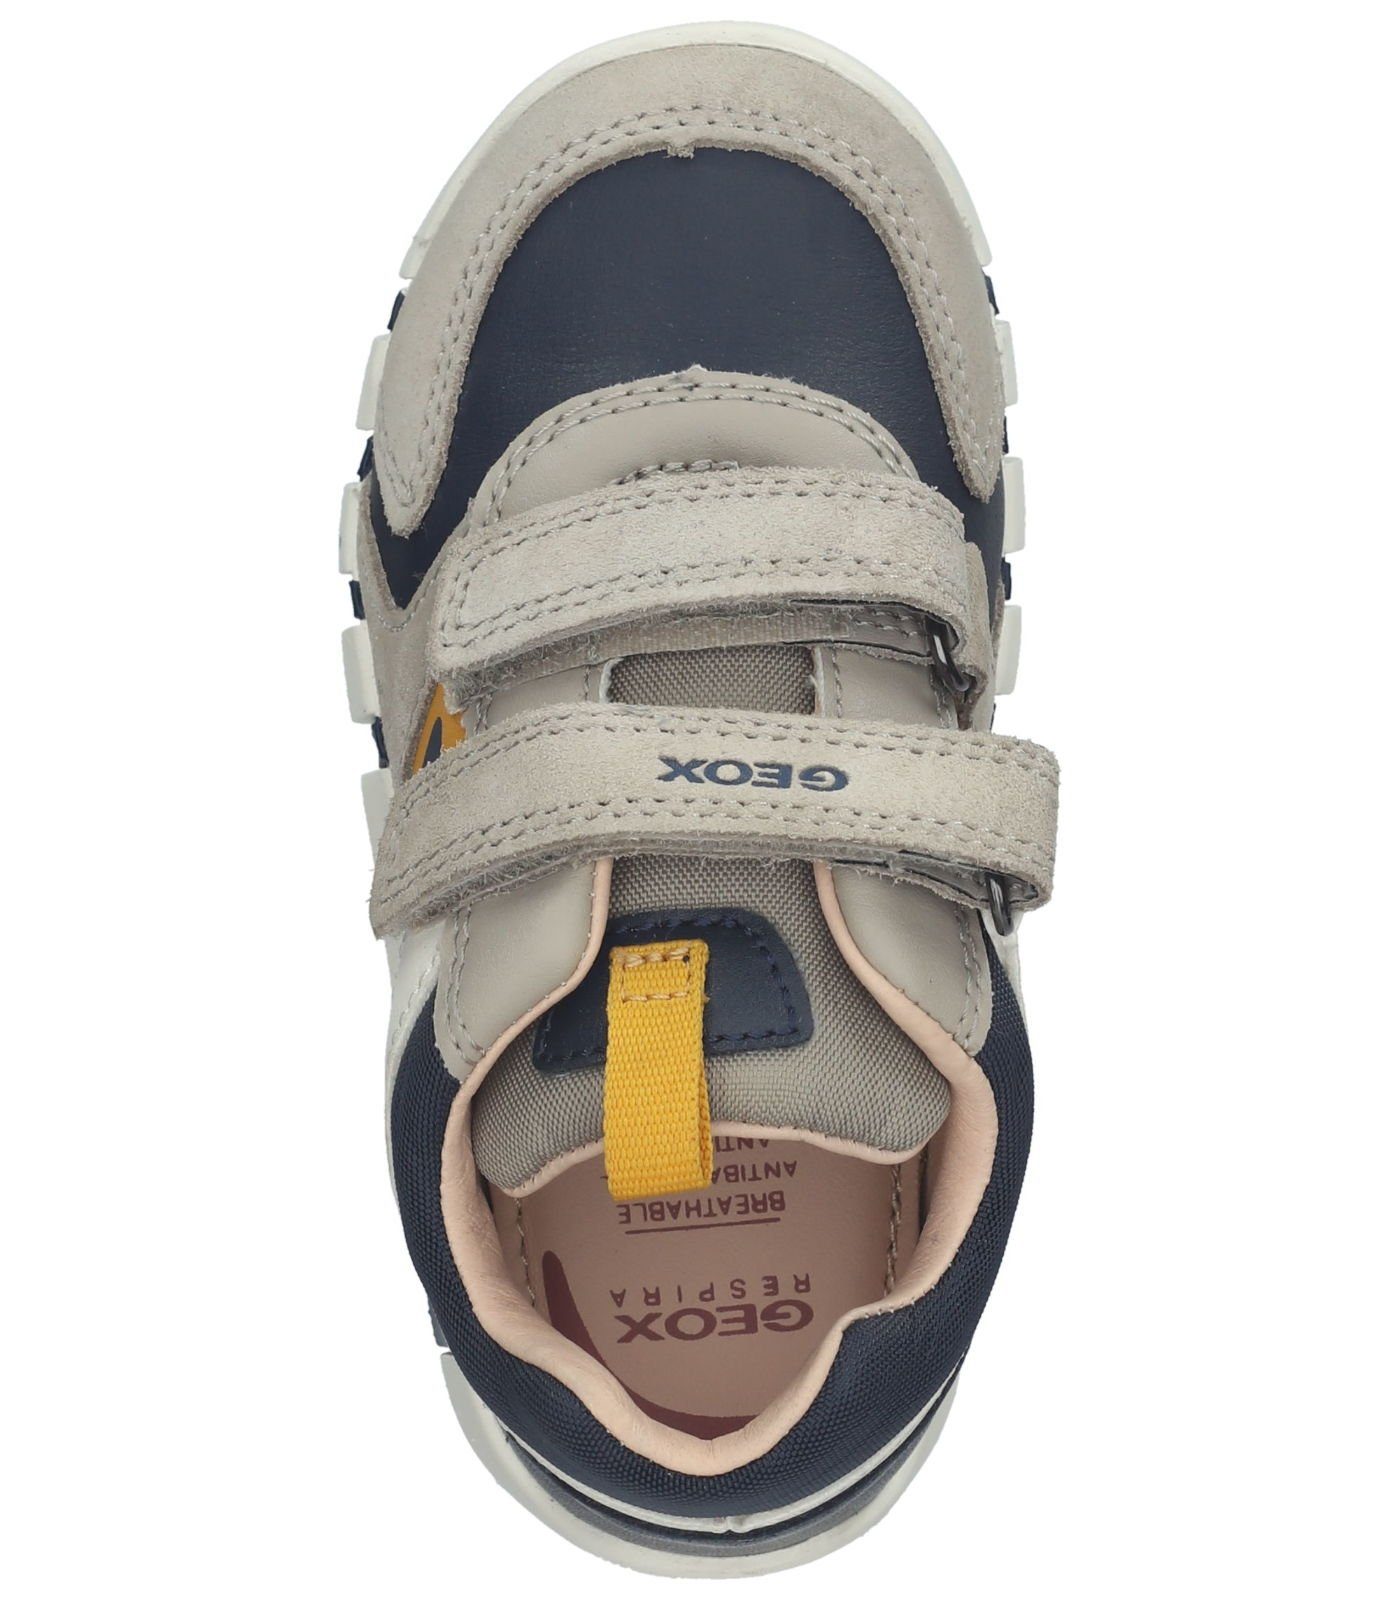 Leder/Textil Geox Sneaker Sneaker Sand